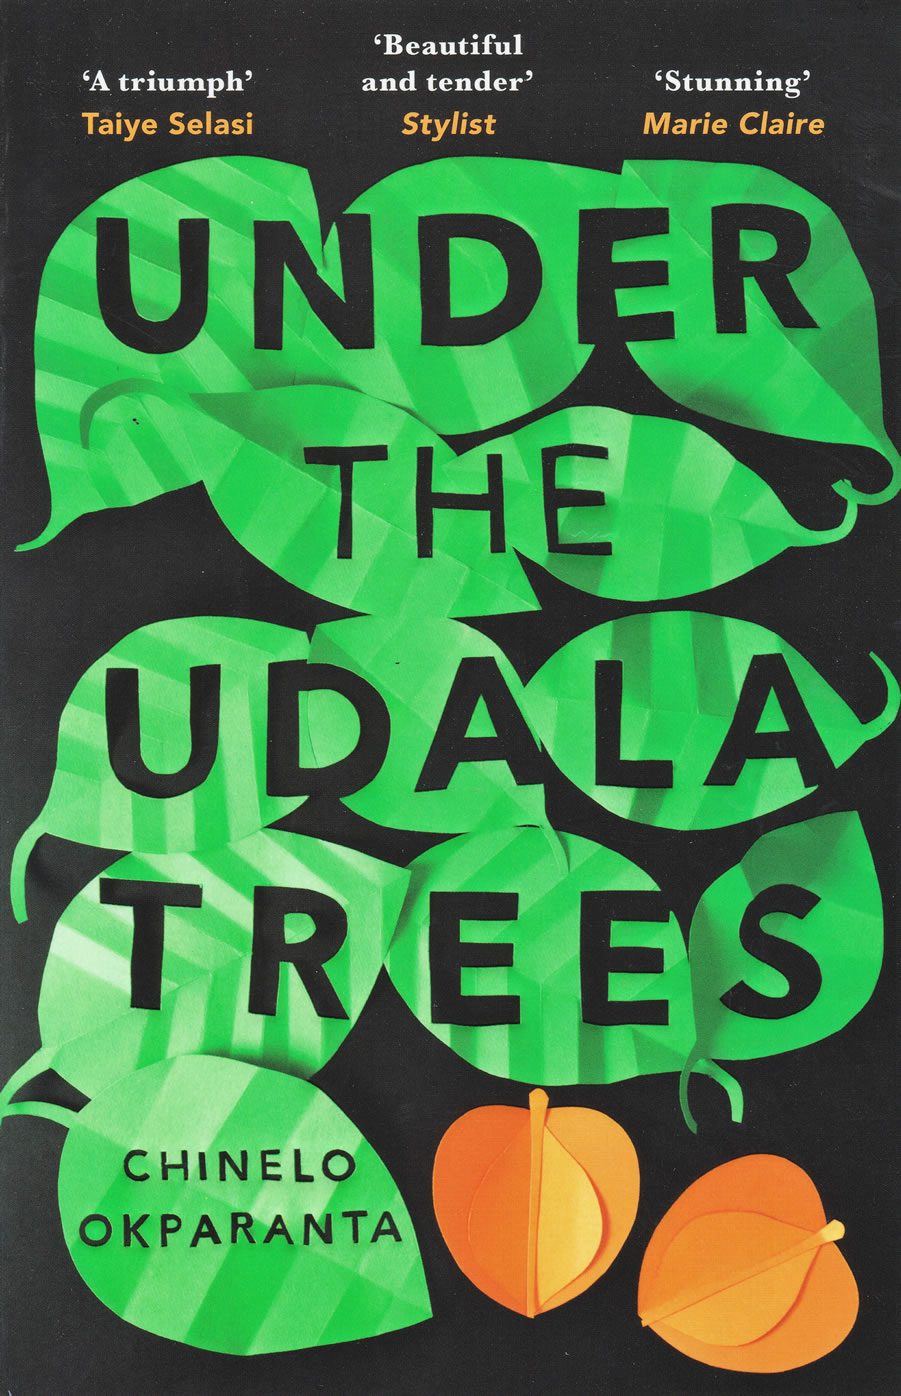 under udala tree